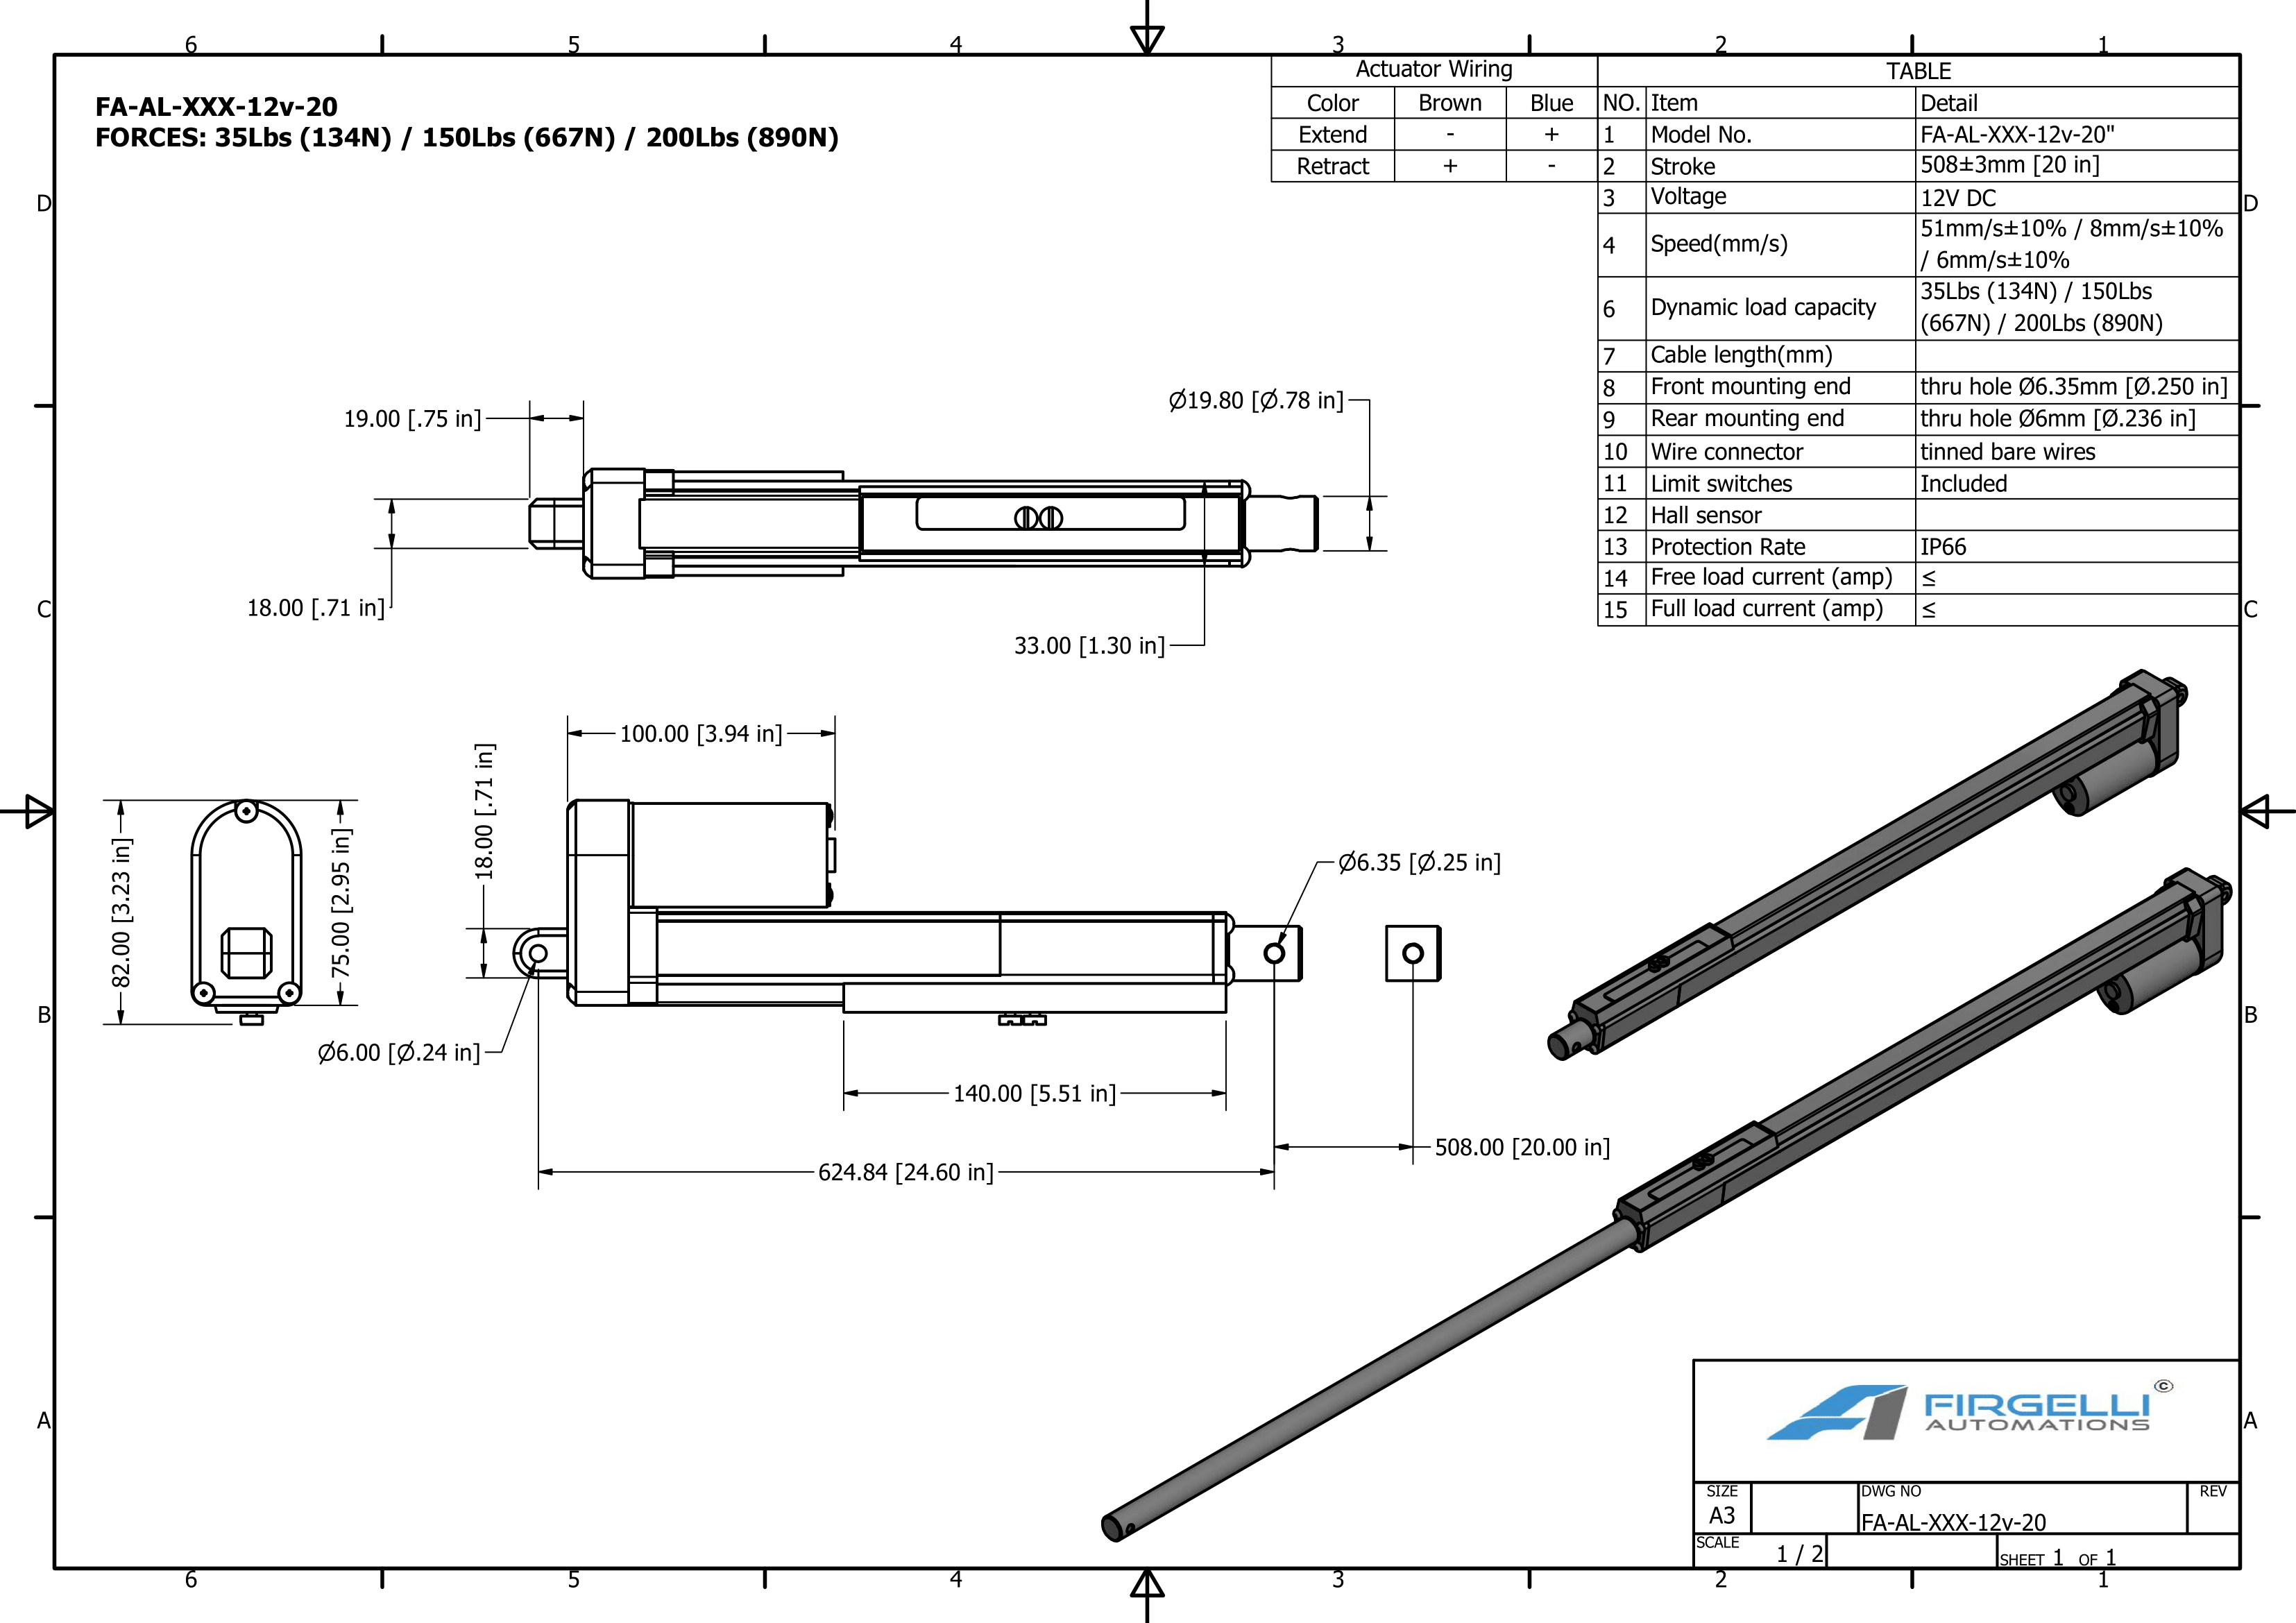 Dimensiones del actuador de trazo ajustable con un trazo de 24 pulgadas